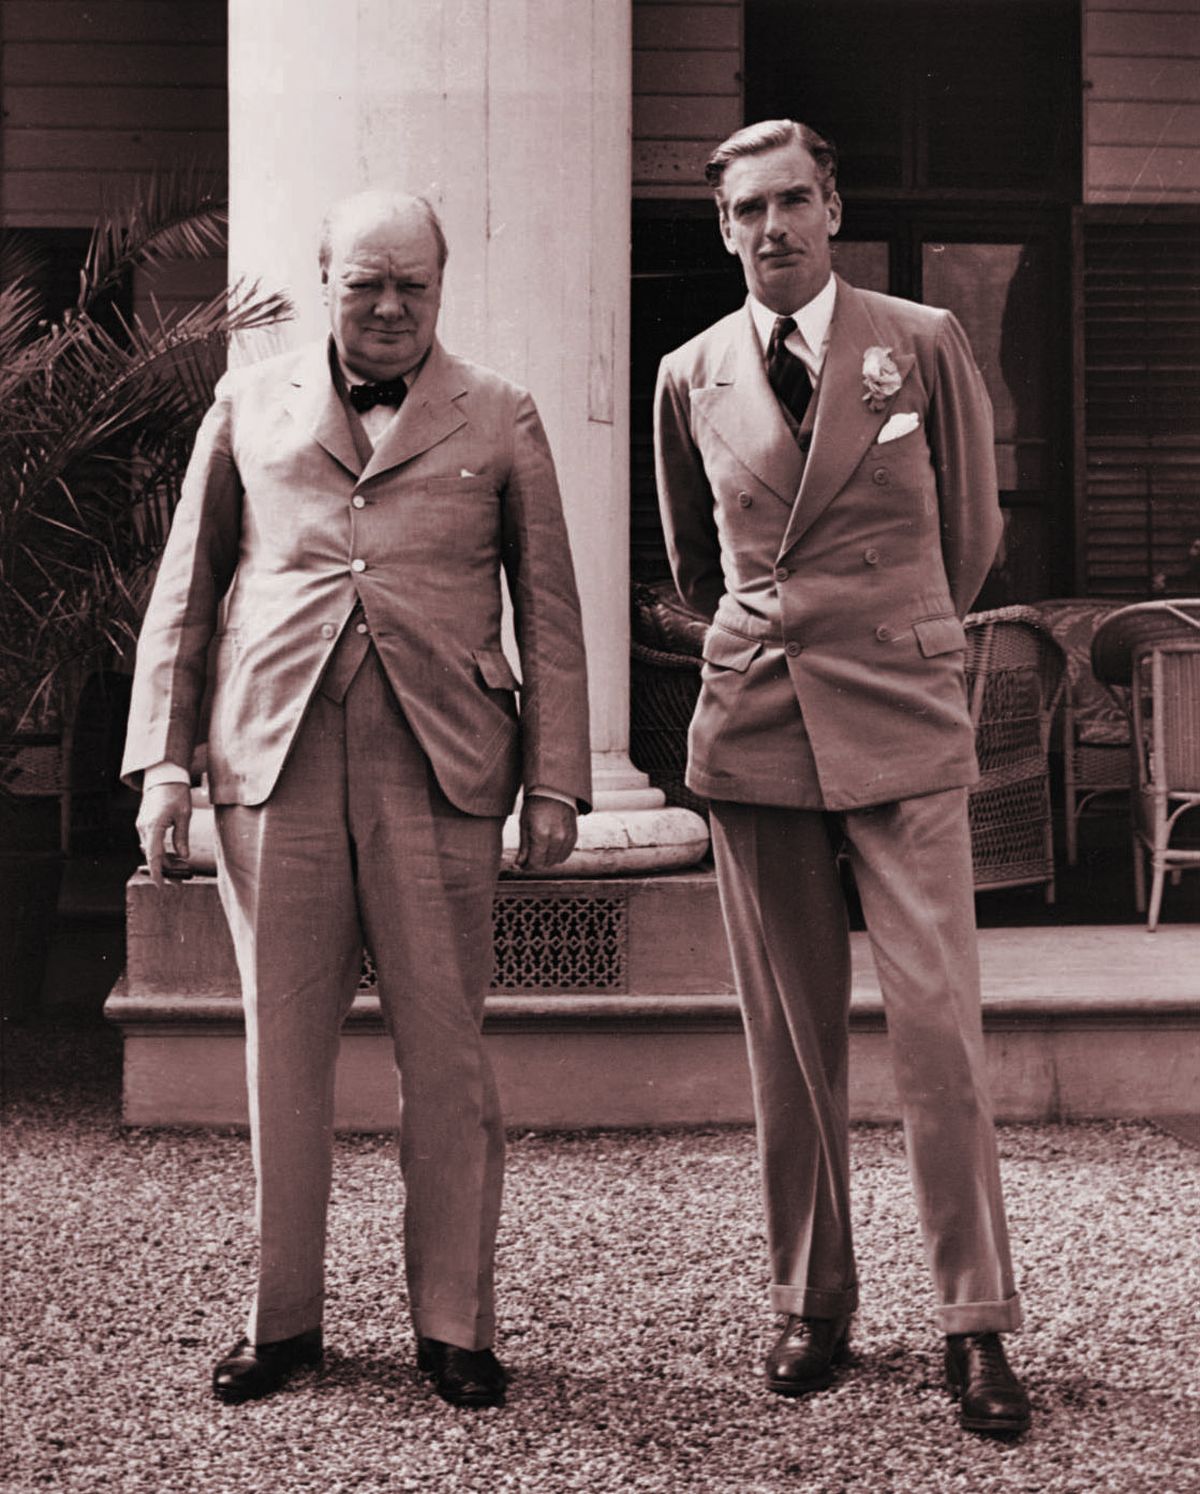 Anthony Eden (paremal) oli Briti konservatiivse partei tõusev täht, keda peeti Churchilli poliitiliseks mantlipärijaks. Eden ei mallanud peaministri toolile tõusmisega oodata ja oleks juhtohjad heameelega enda kätte võtnud. Tegelikult pidi ta ootama 1955. aastani.